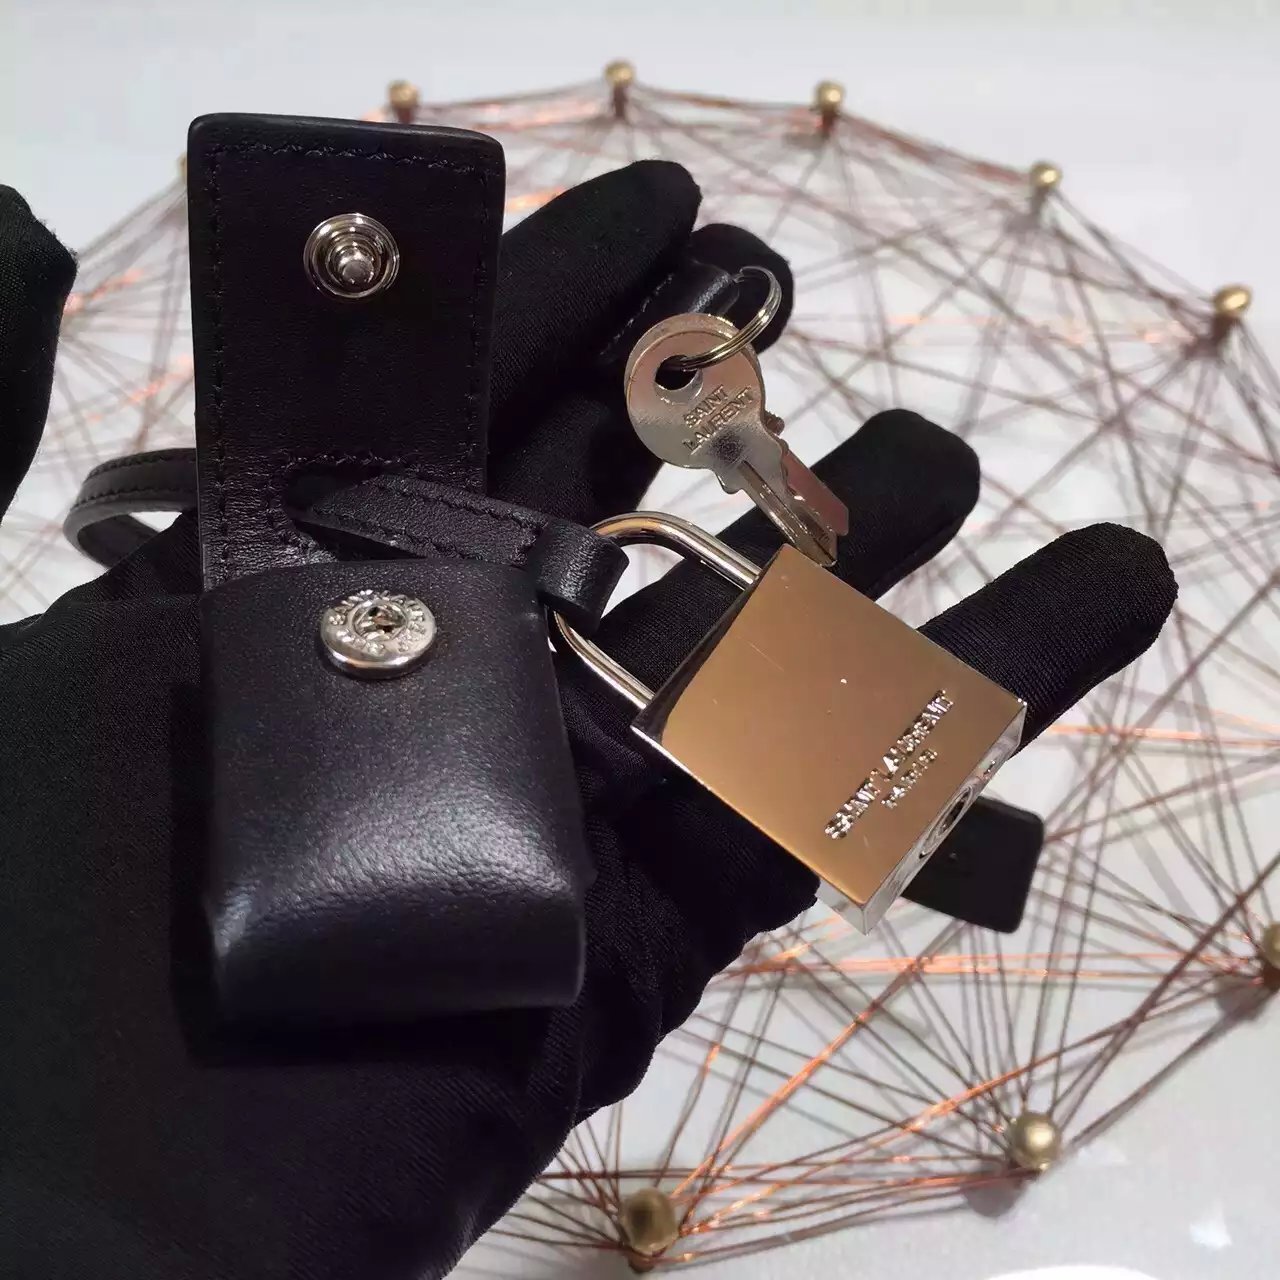 2015 New Saint Laurent Bag Cheap Sale-Saint Laurent Classic 32cm Sac De Jour Bag in Black Calf Leather with Star Studs - Click Image to Close